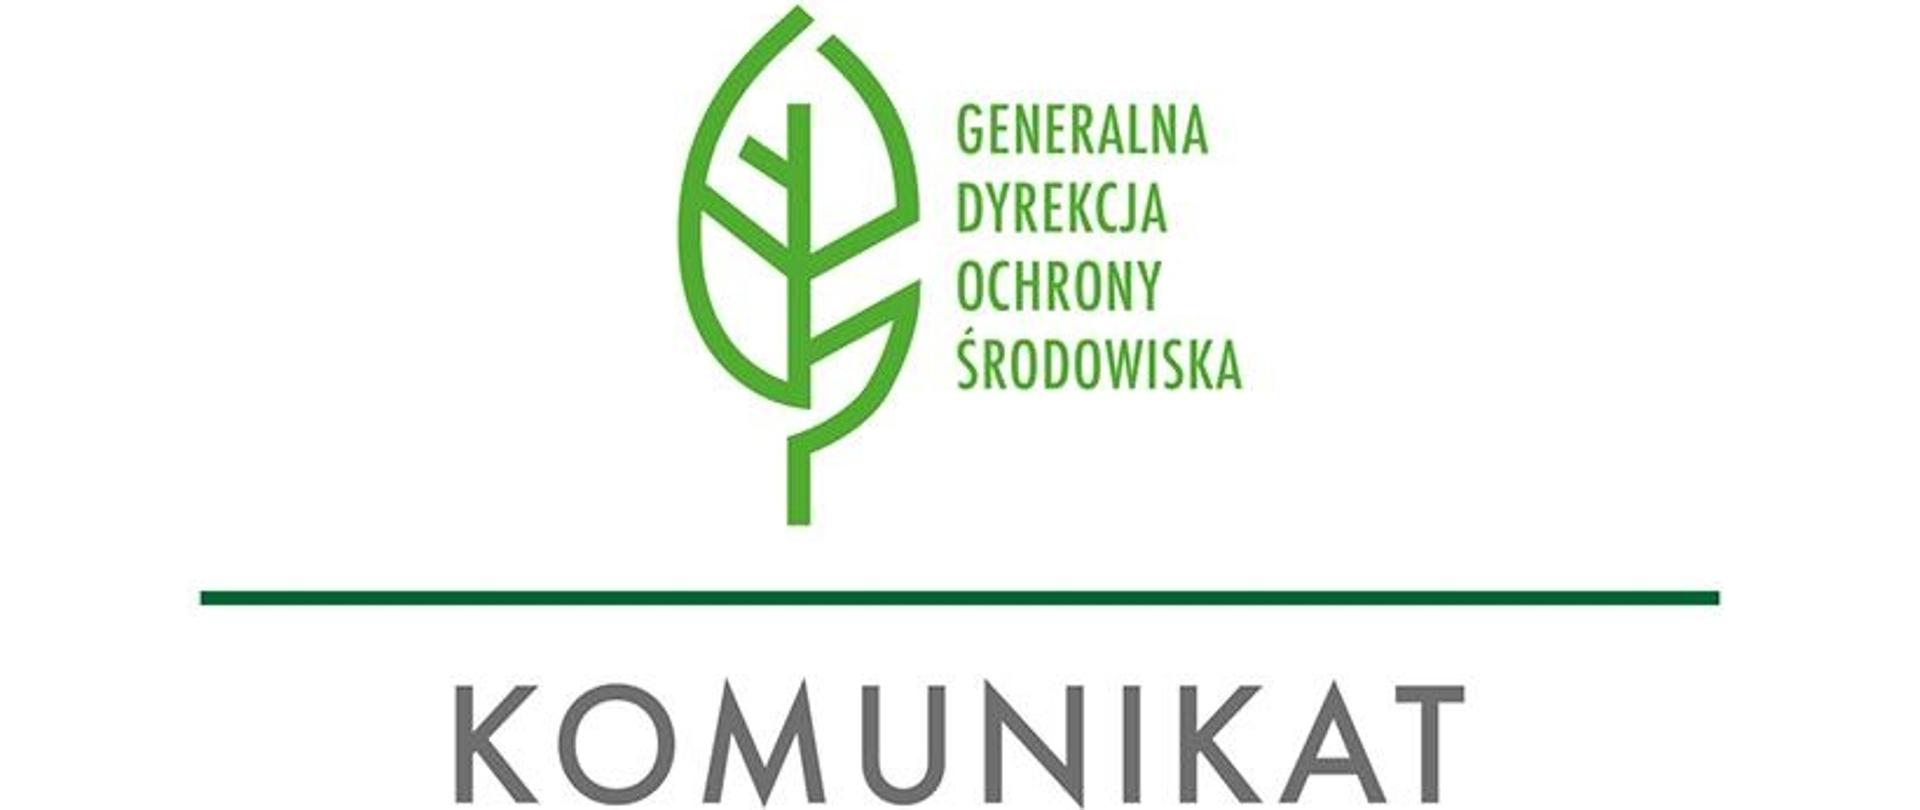 Na białym tle logo: zielony listek i napis Generalna Dyrekcja Ochrony Środowiska, oddzielone zieloną kreską poziomą od szarego napisu komunikat.